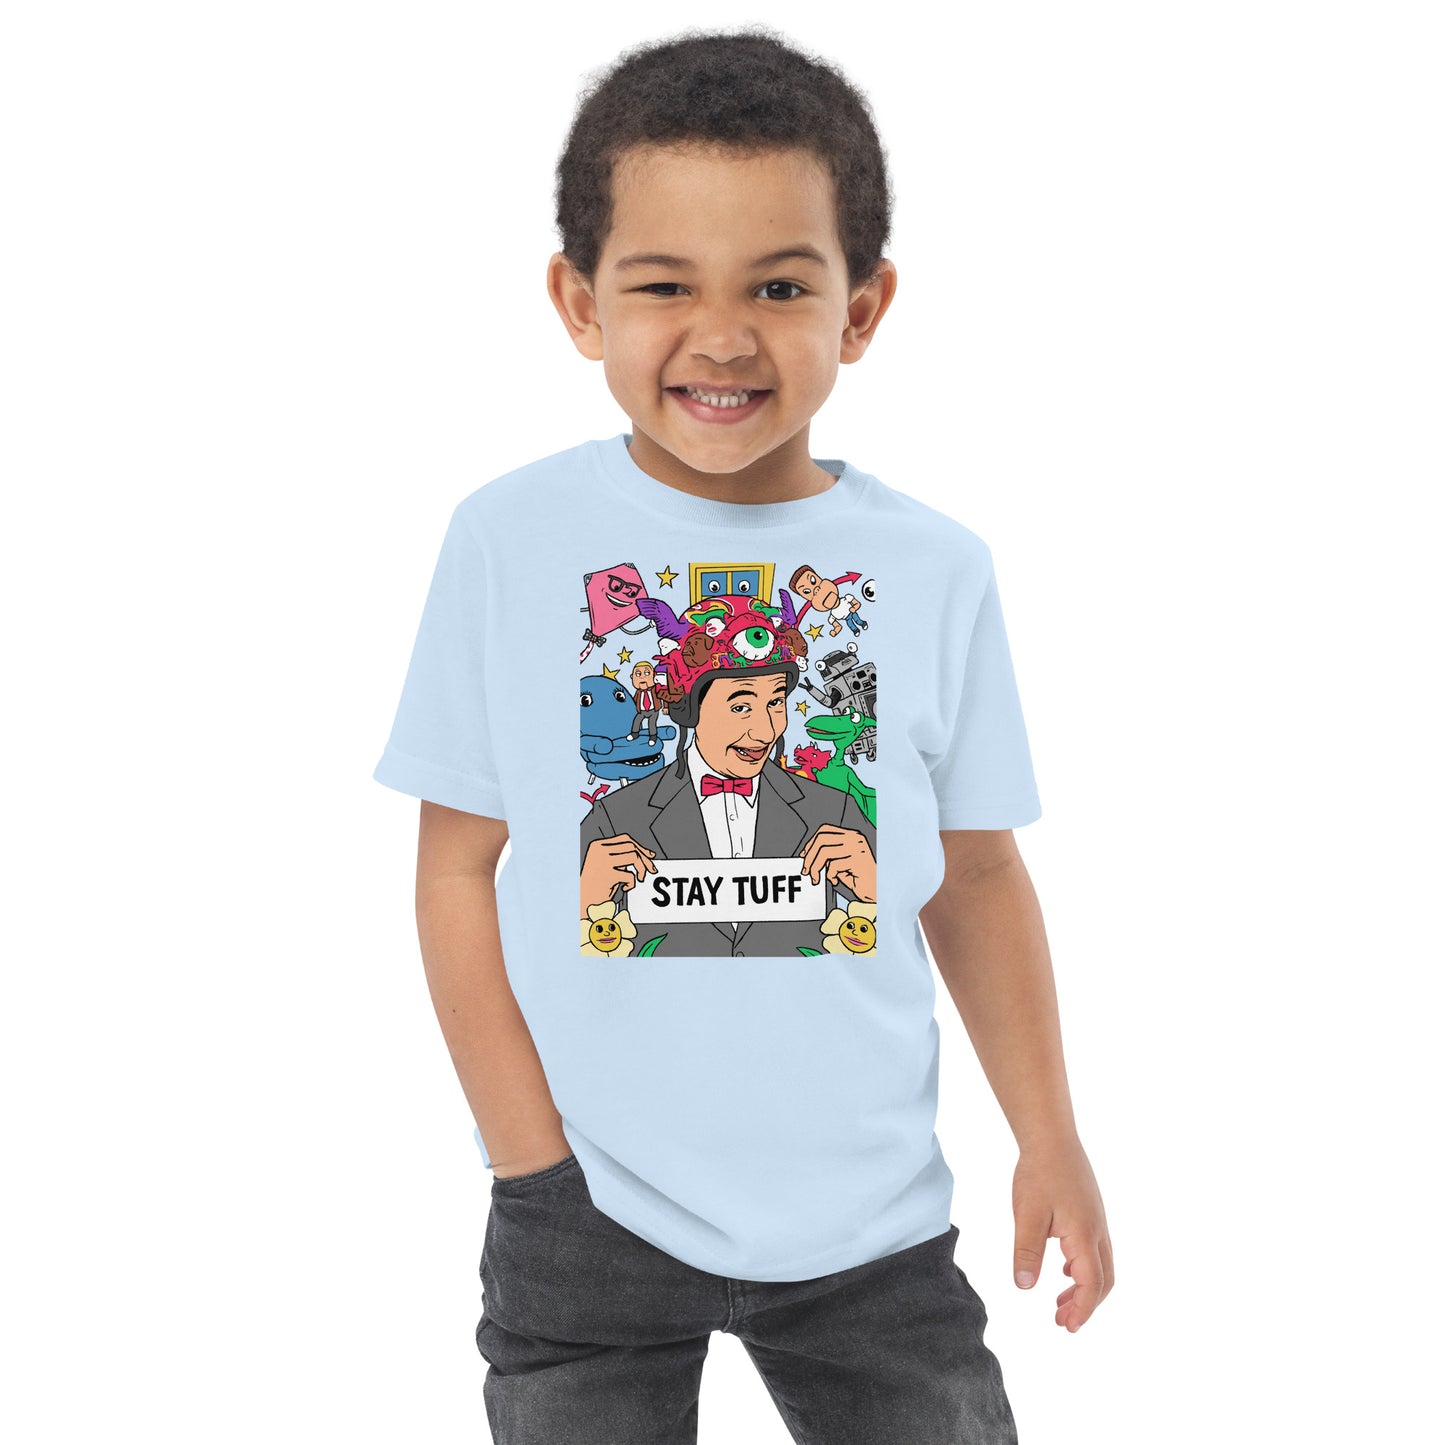 PLAYHOUSE (Toddler T-Shirt)